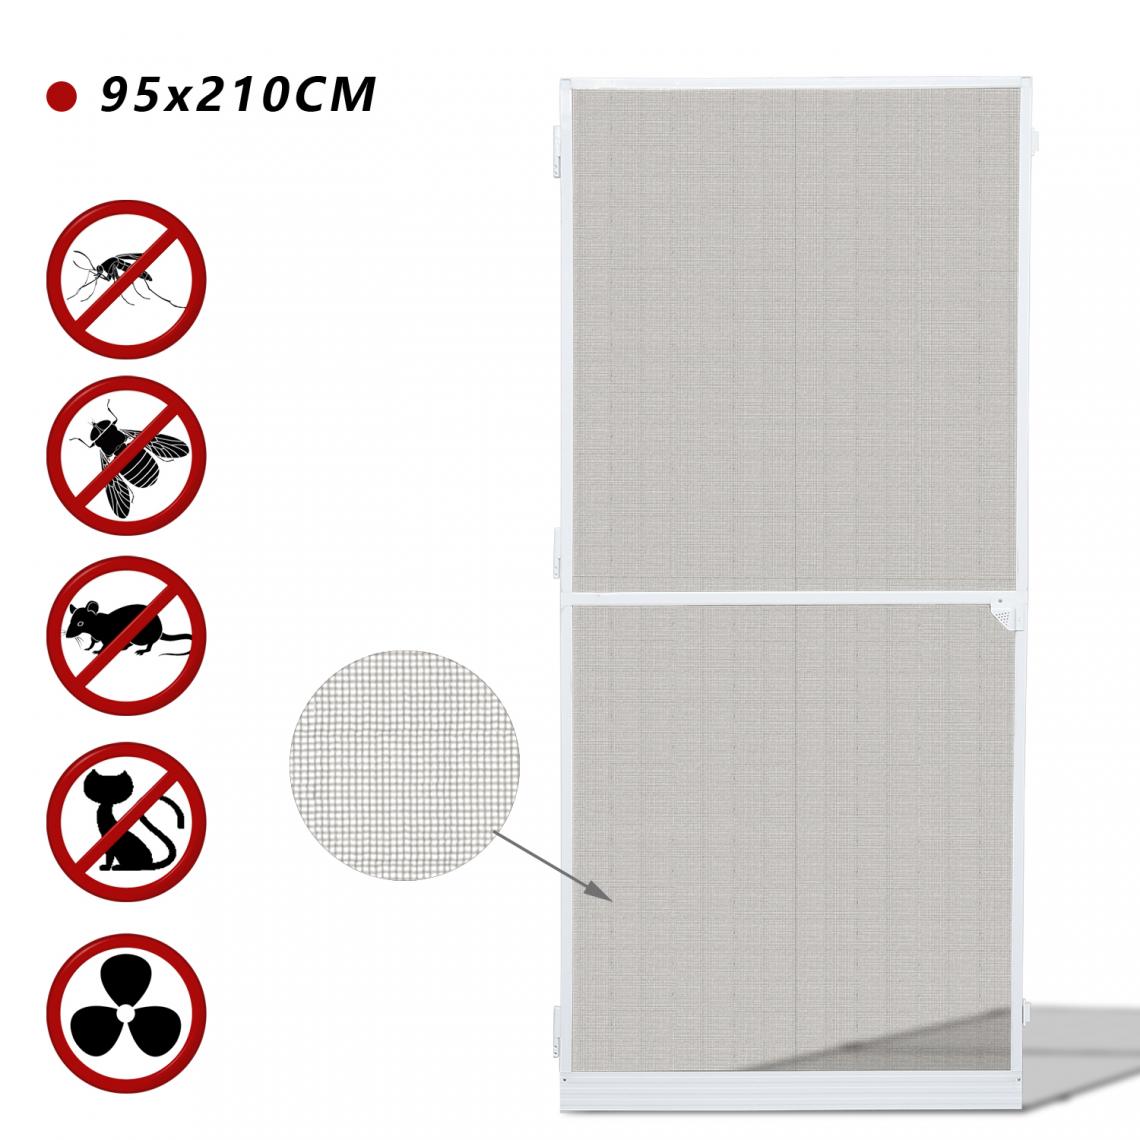 Einfeben - Porte moustiquaire - 95x210CM moustiquaire porte moustiquaire imperméable cadre en alu moustiquaire fibre de verre - Moustiquaire Fenêtre